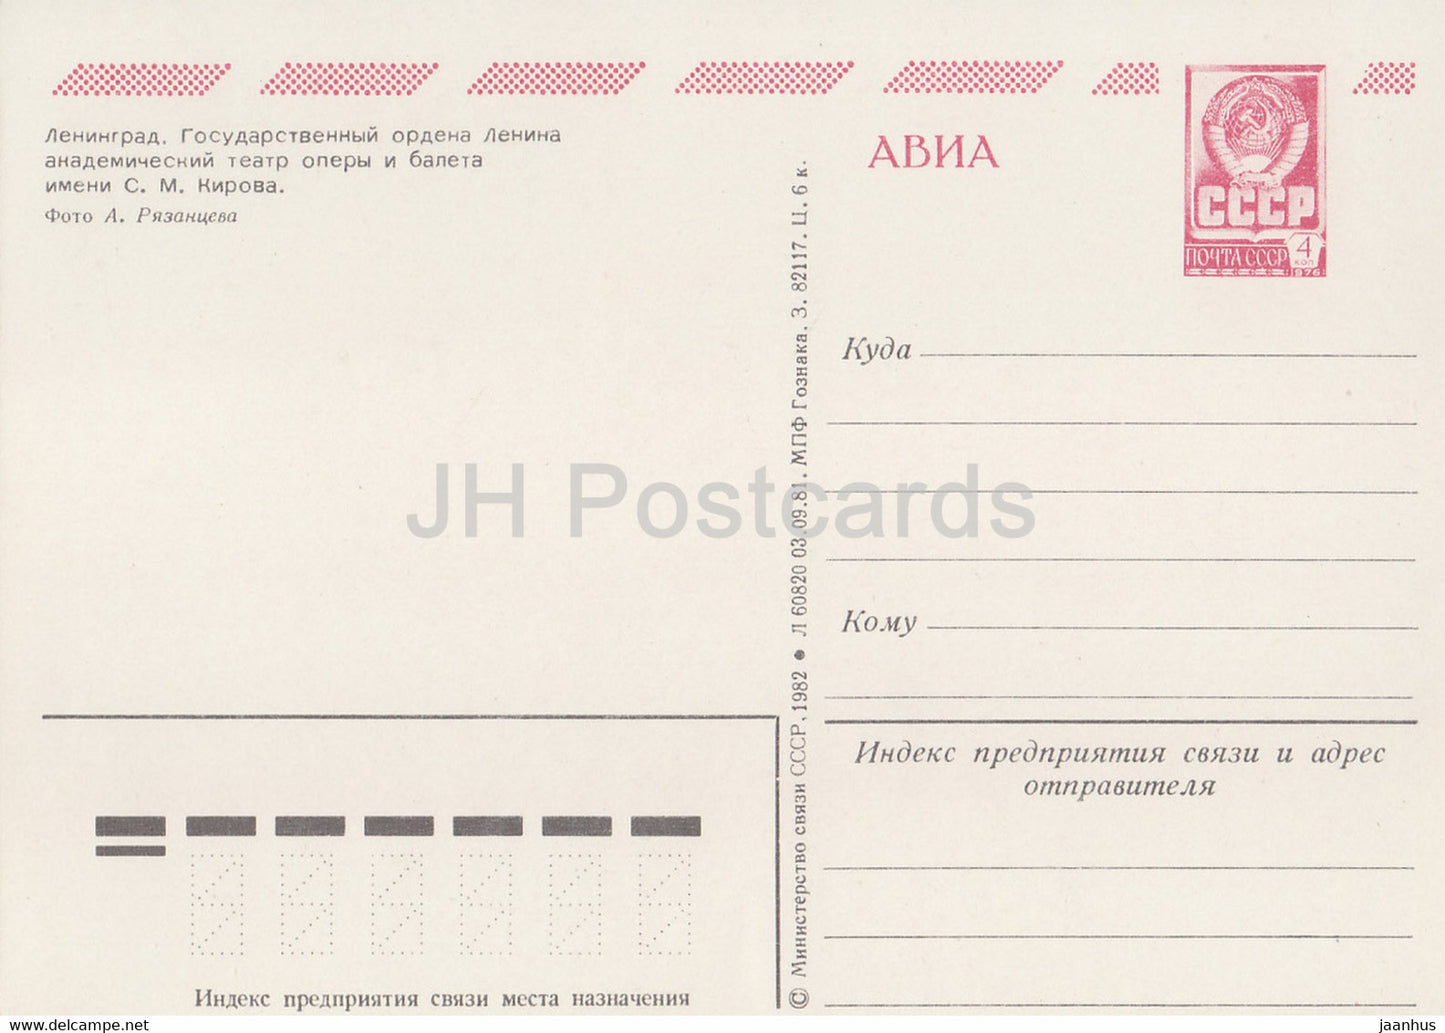 Leningrad - Saint-Pétersbourg - Théâtre d'opéra et de ballet Kirov - AVIA - entier postal - 1982 - Russie URSS - inutilisé